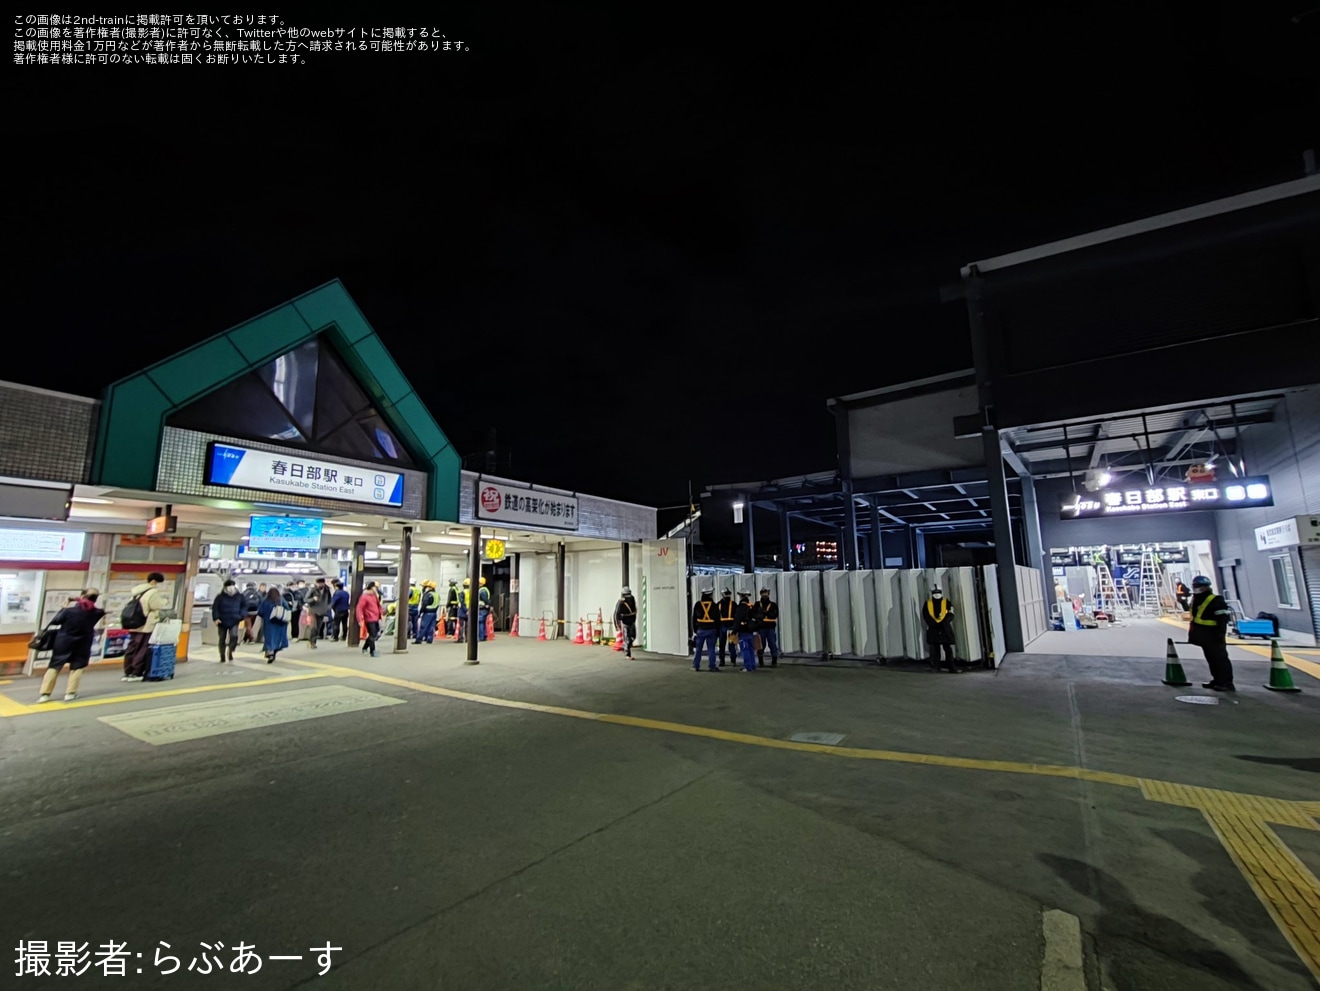 【東武】春日部駅東口旧駅舎が営業終了の拡大写真